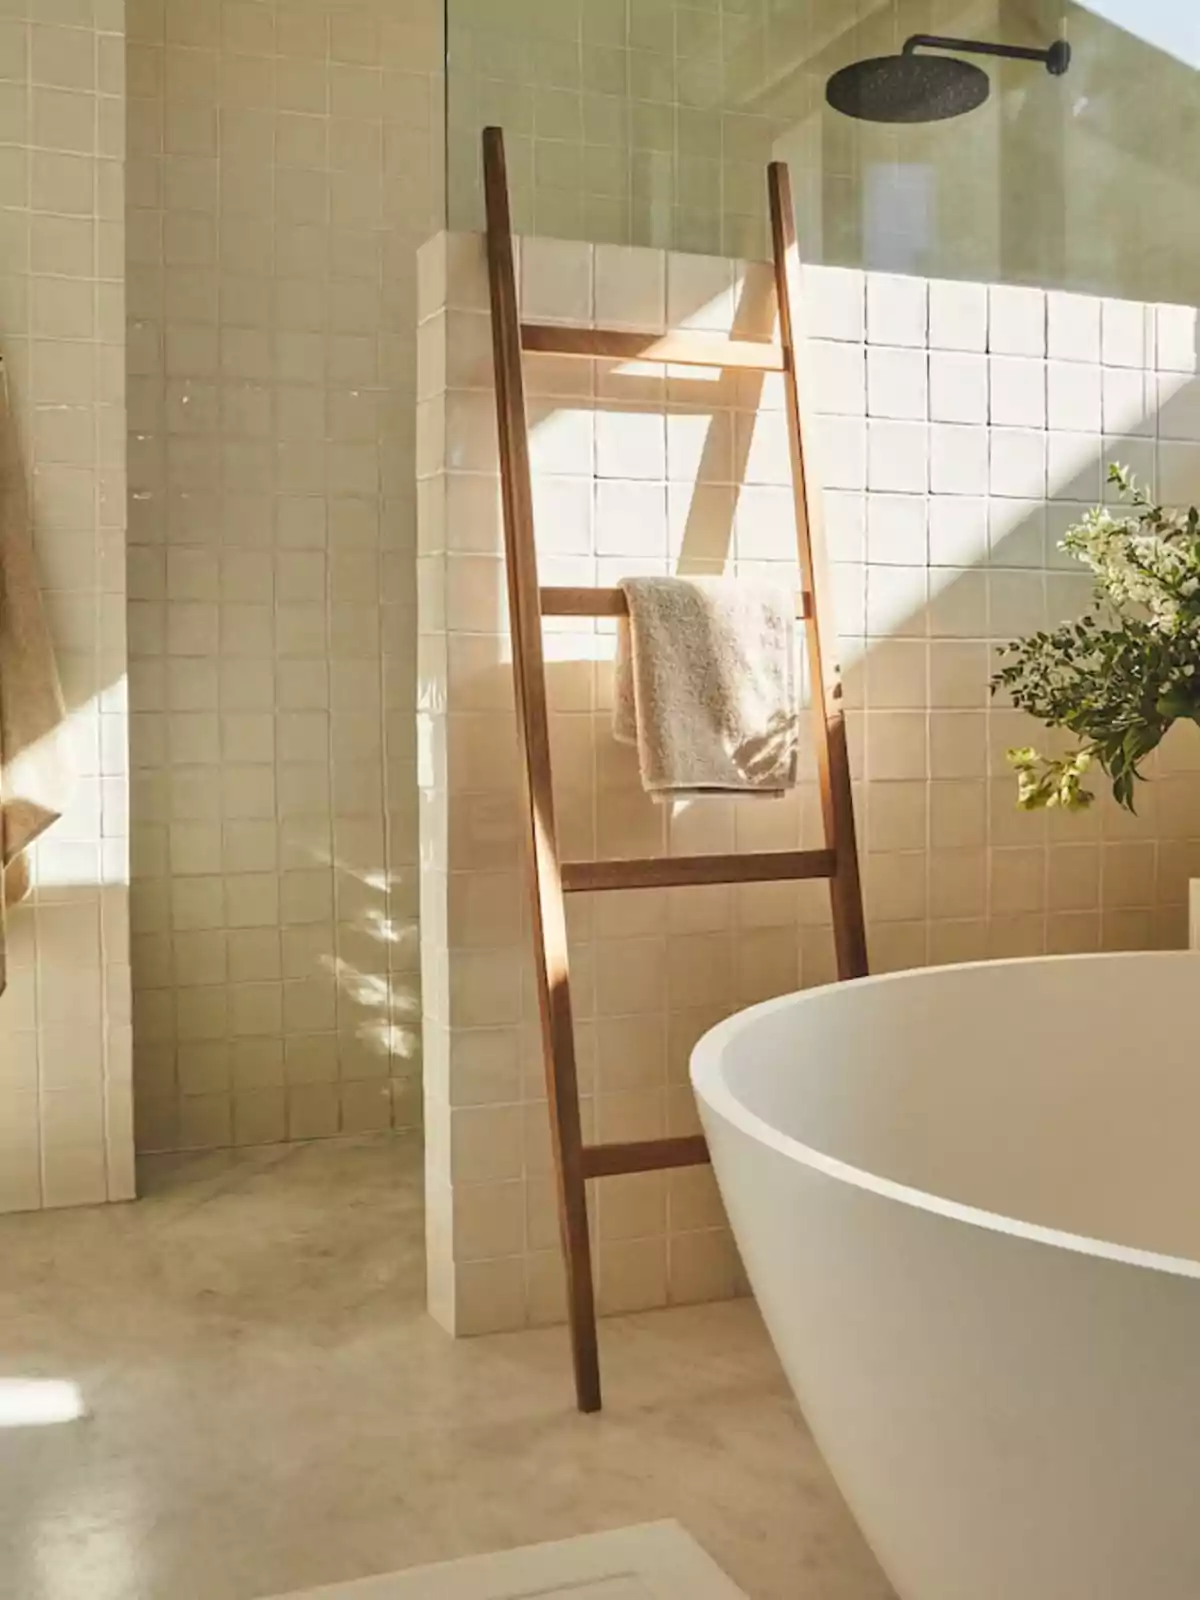 Baño moderno con una bañera blanca, una escalera de madera usada como toallero y una ducha con azulejos beige.